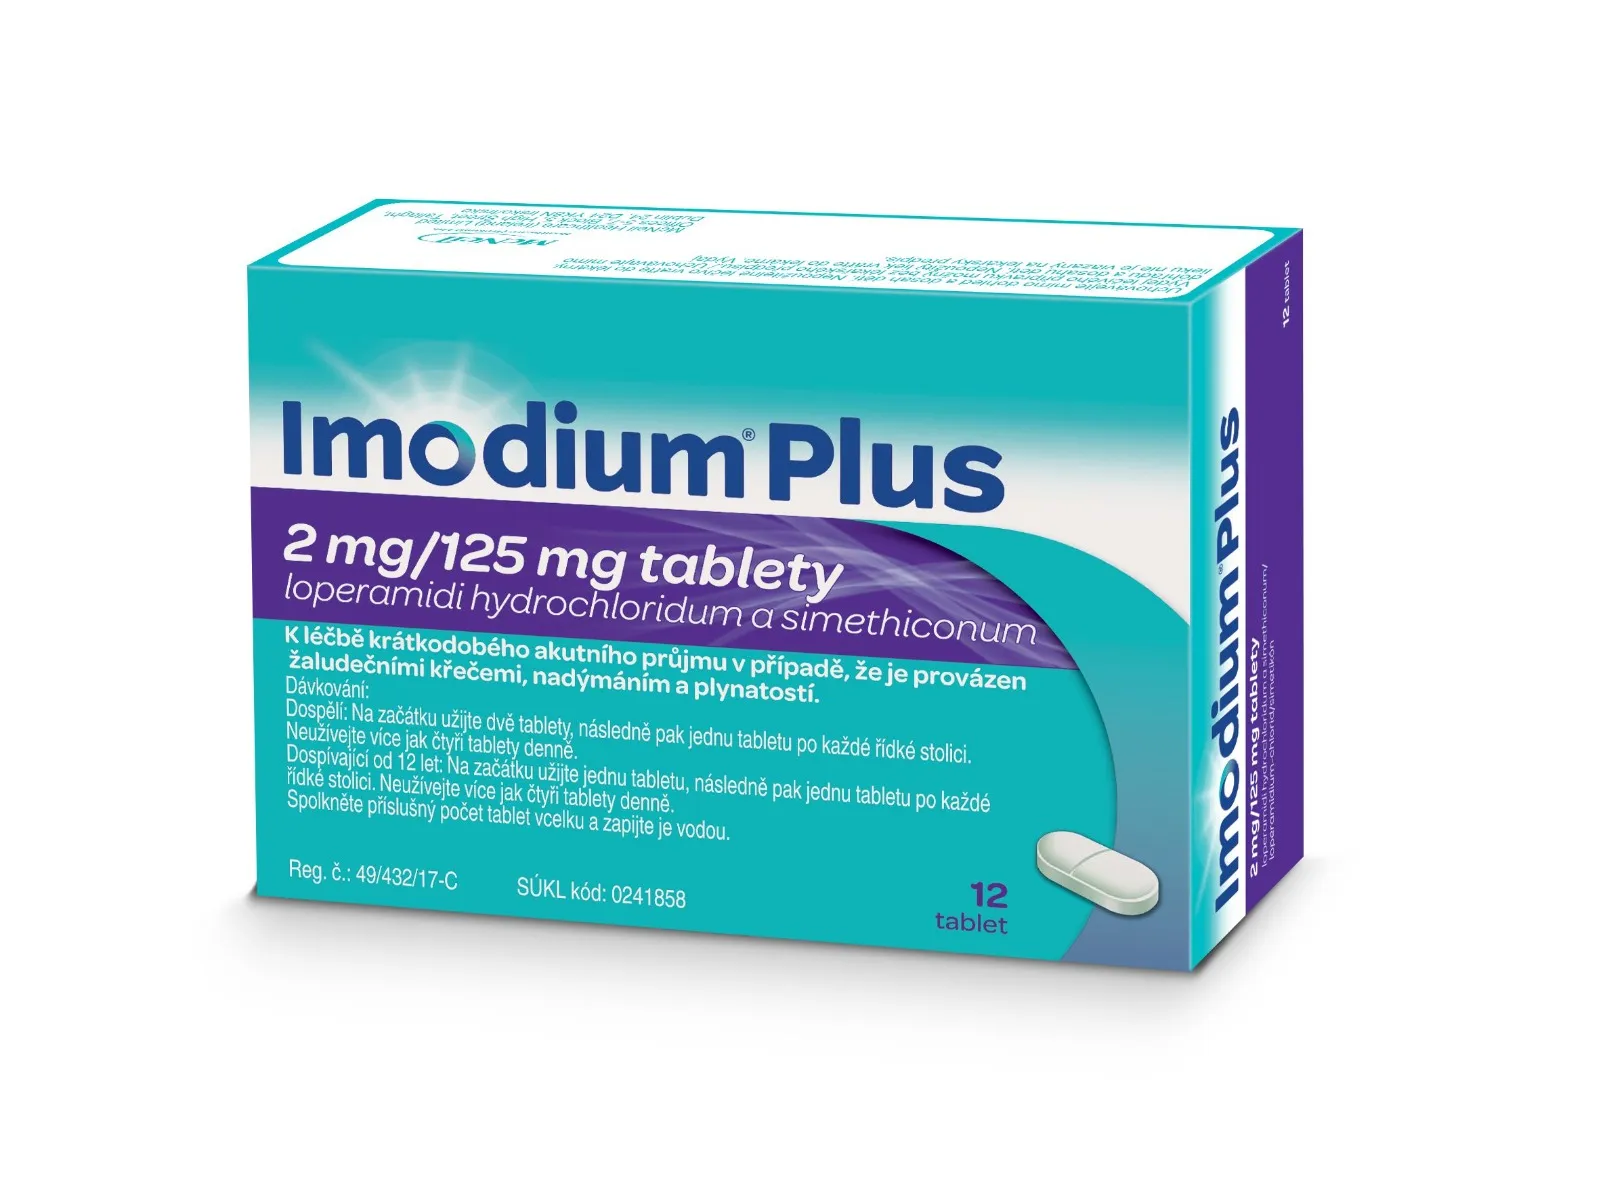 Imodium Plus 2 mg/125 mg 12 tablet